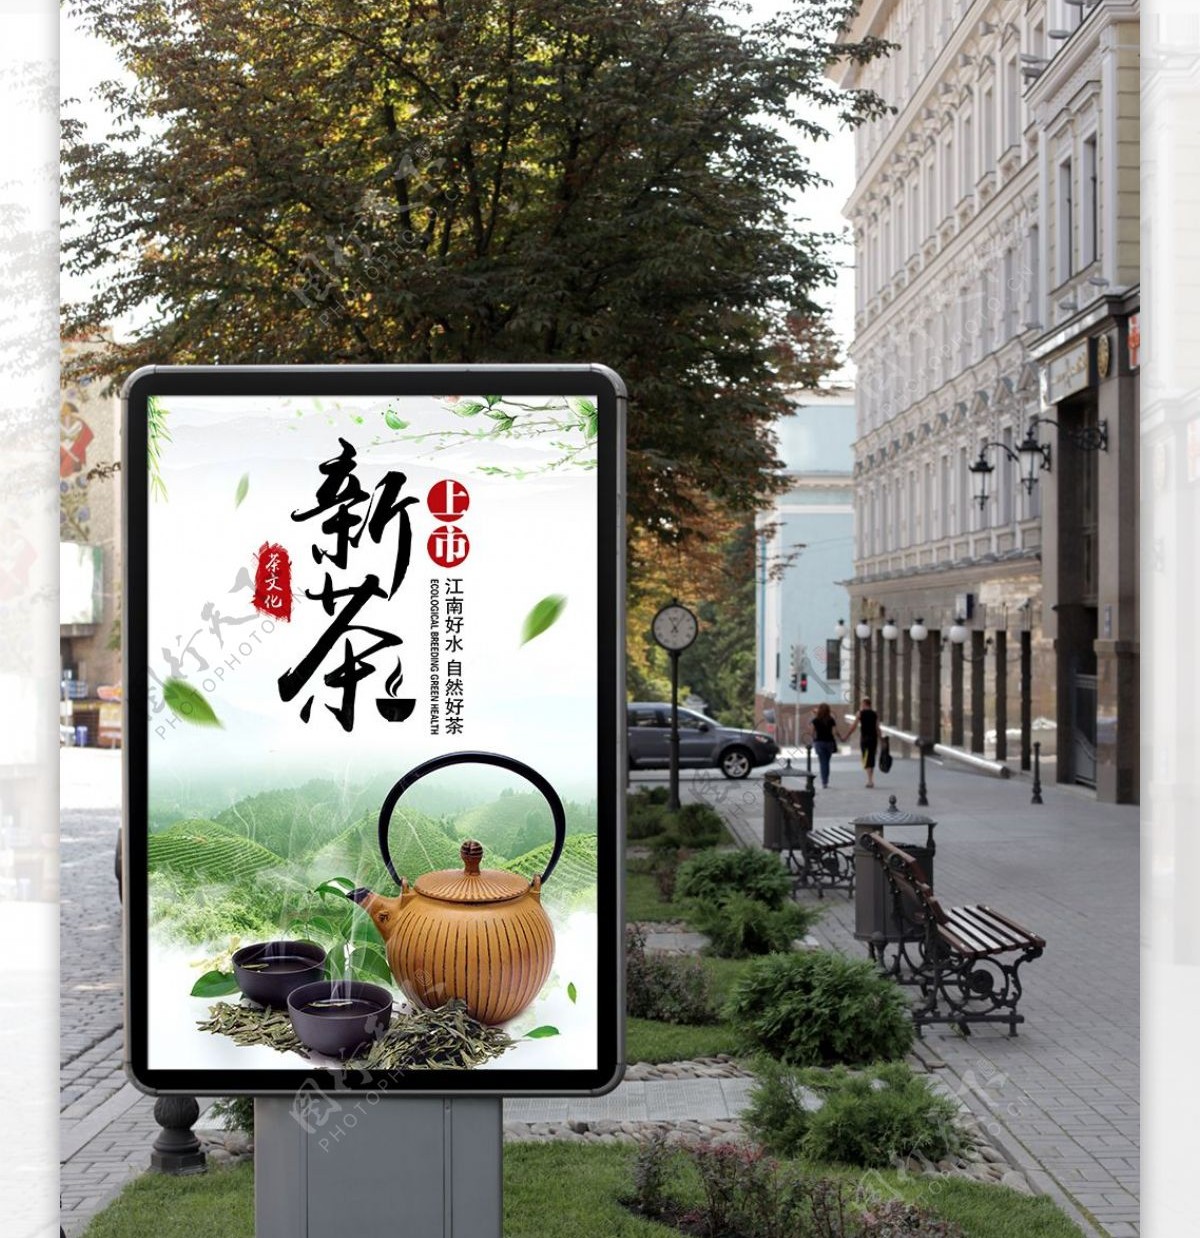 茶文化西湖龙井中国风海报